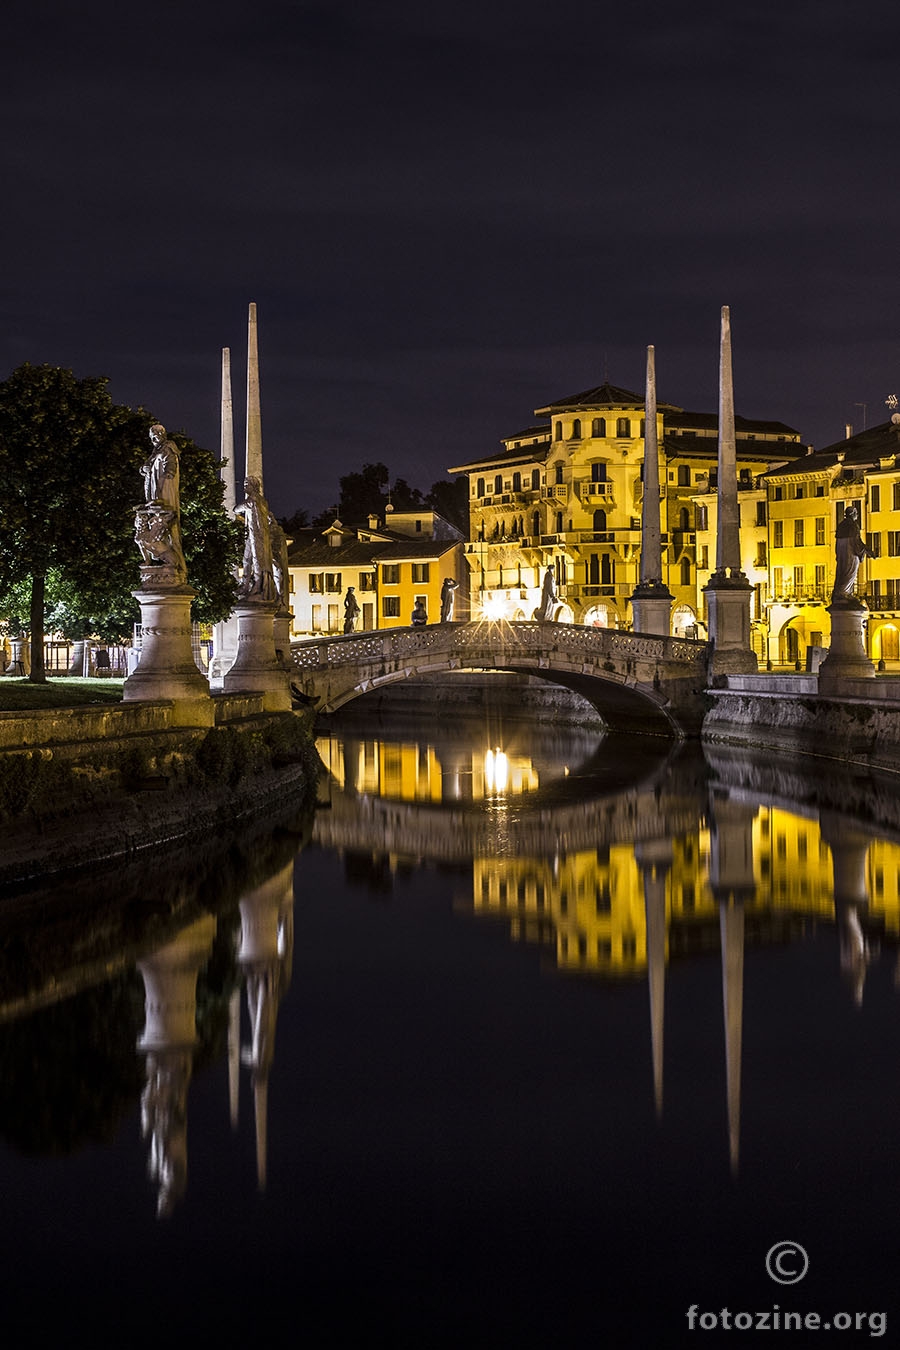 Padova Italy at night